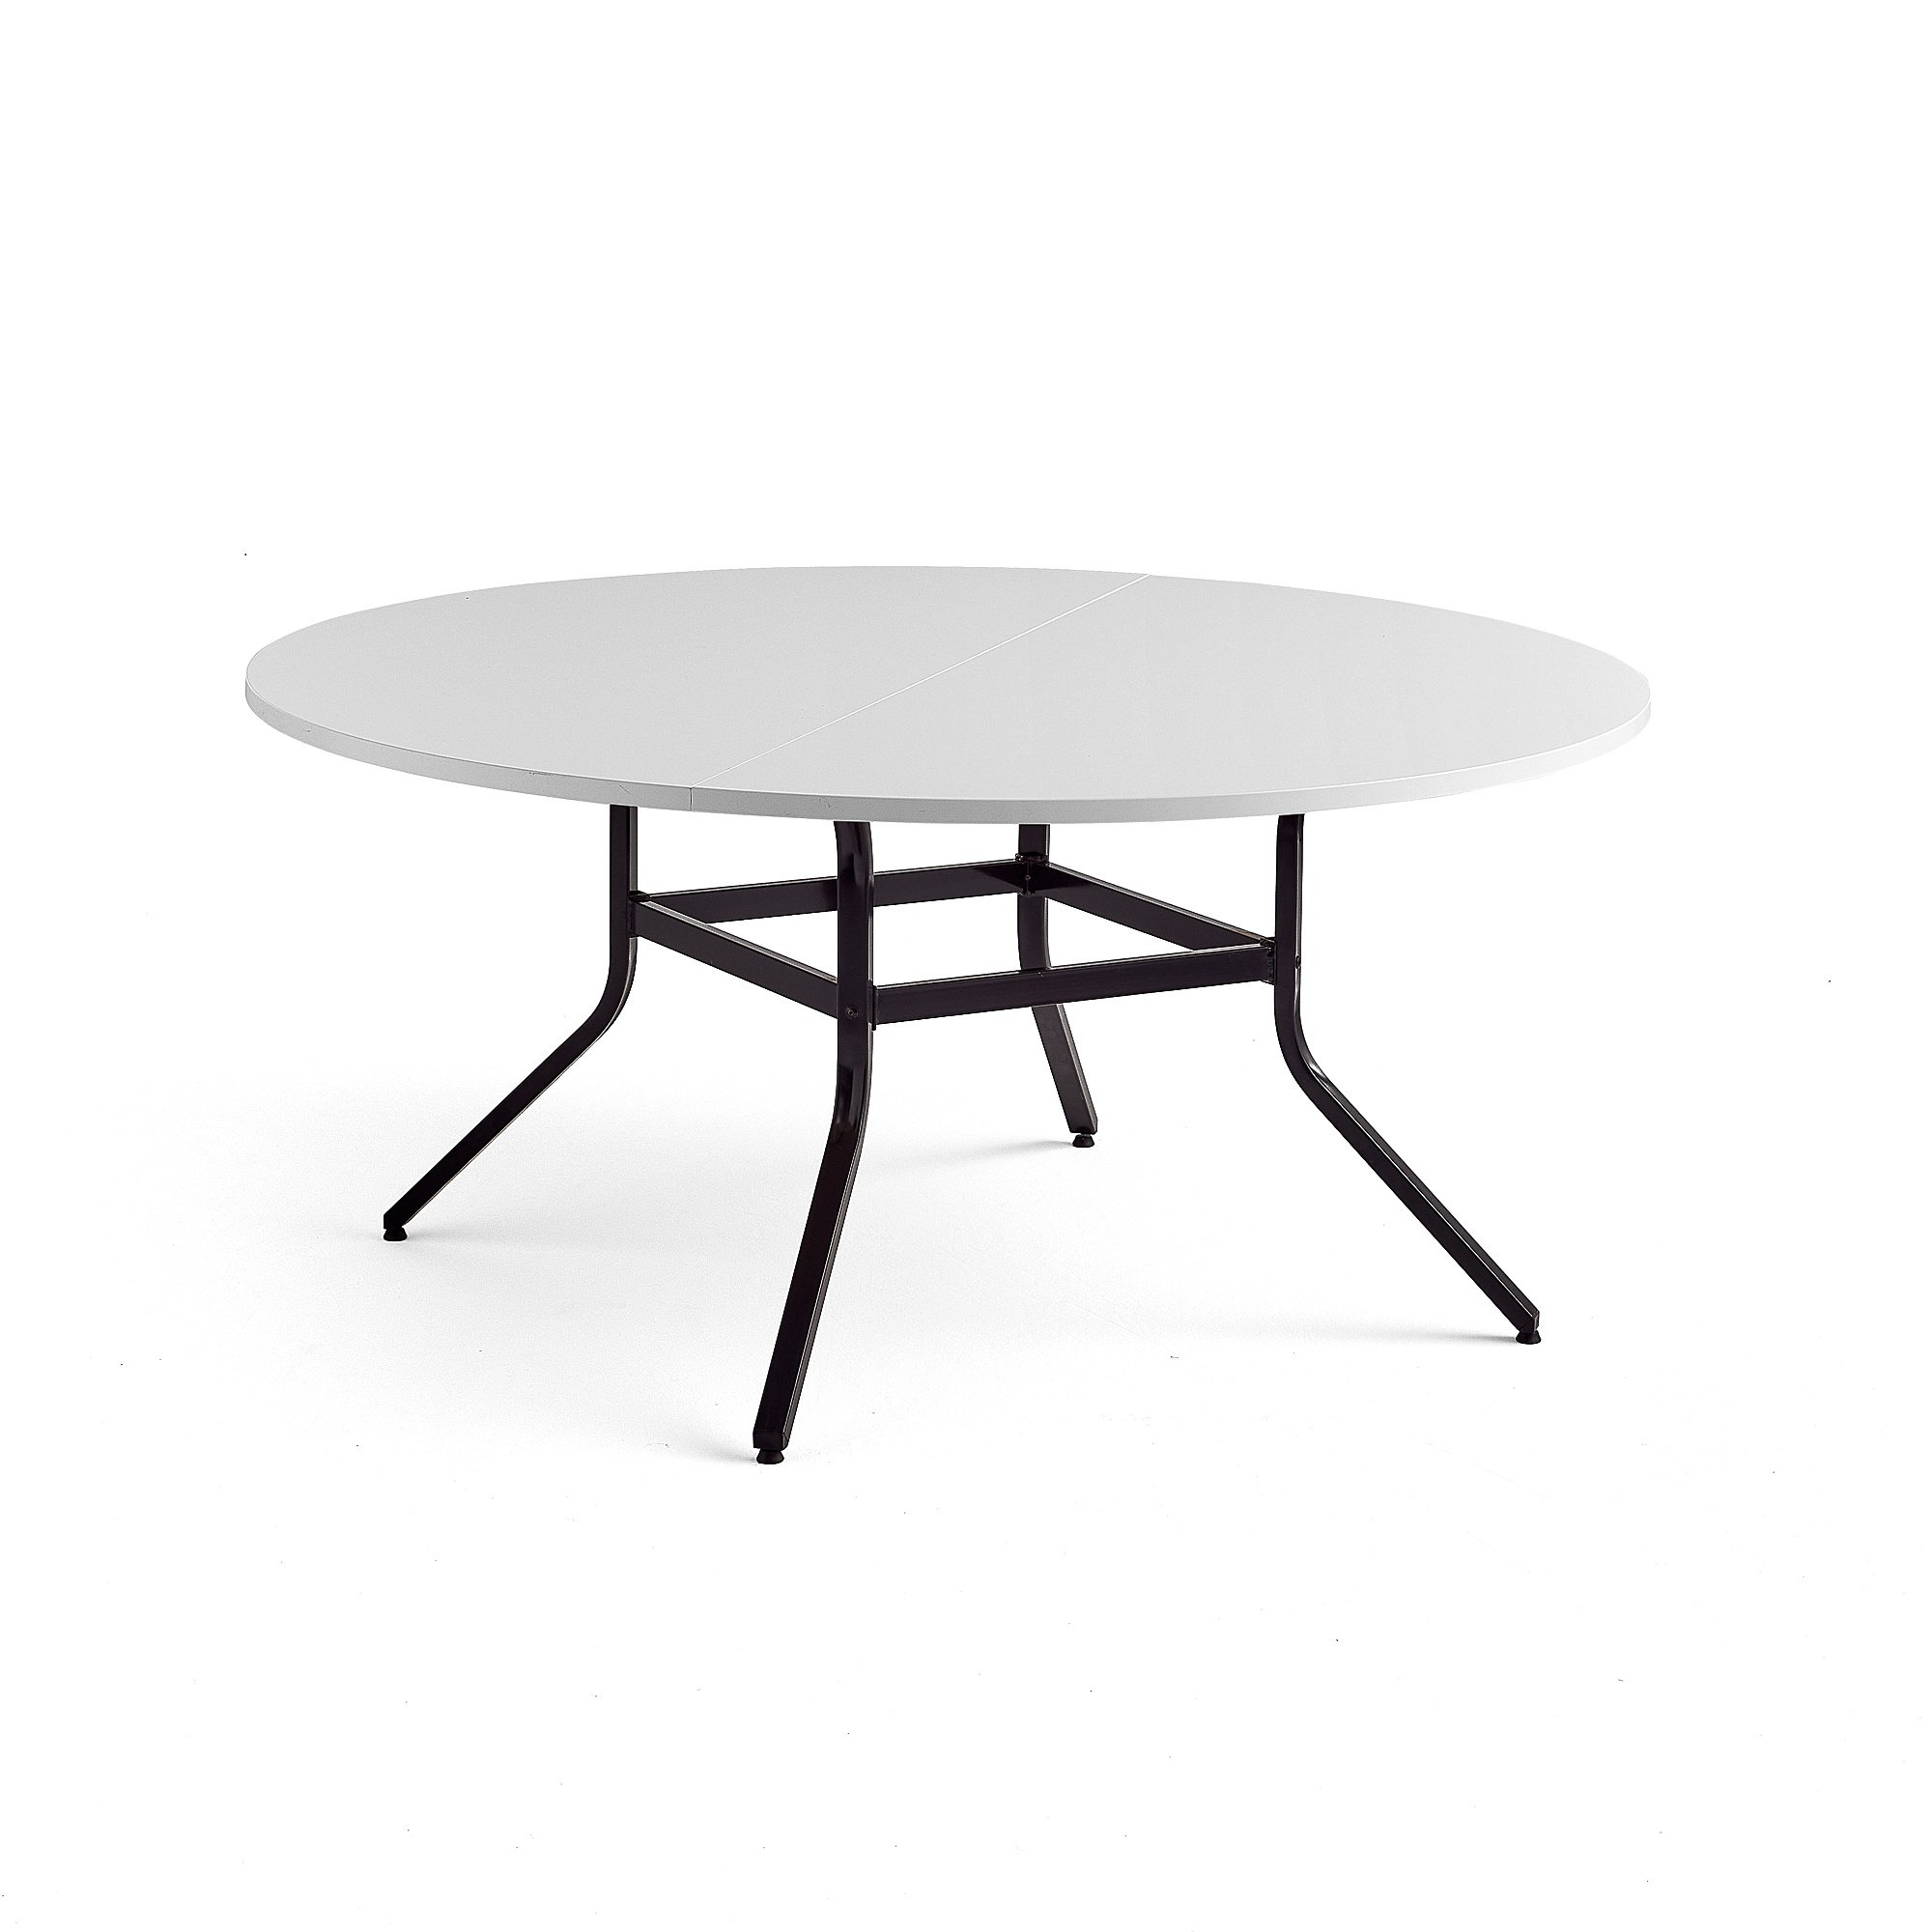 Stůl VARIOUS, Ø1600 mm, výška 740 mm, černá, bílá